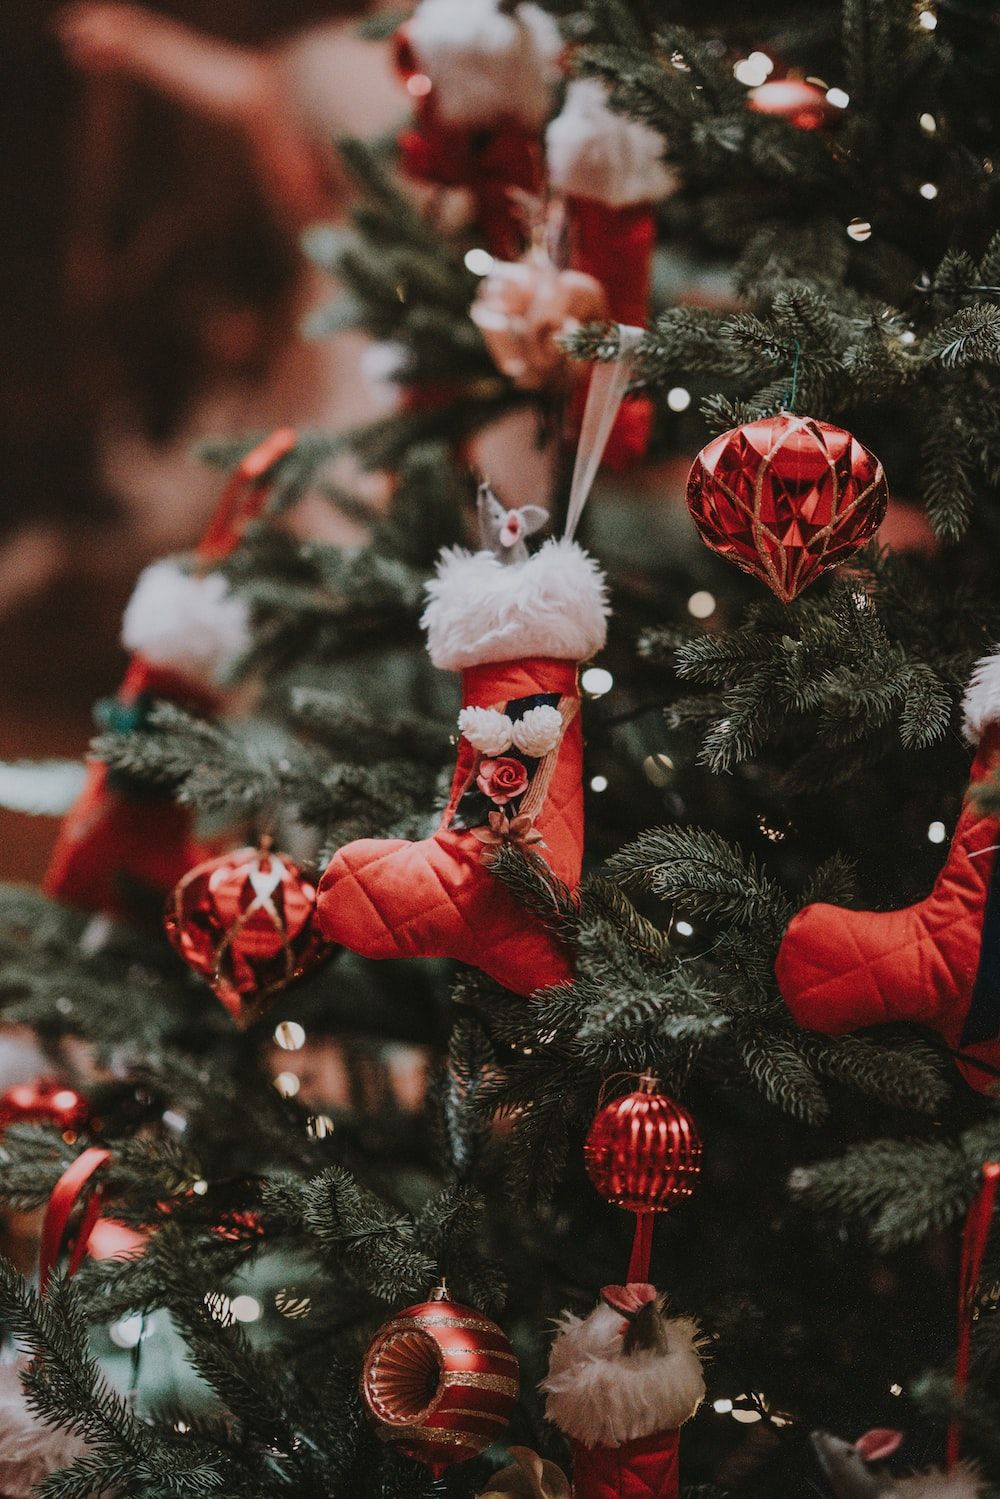  Weihnachtsbaum Hintergrundbild 1000x1499. Foto zum Thema 모듬 크리스마스 트리 장식품으로 미리 켜진 크리스마스 트리